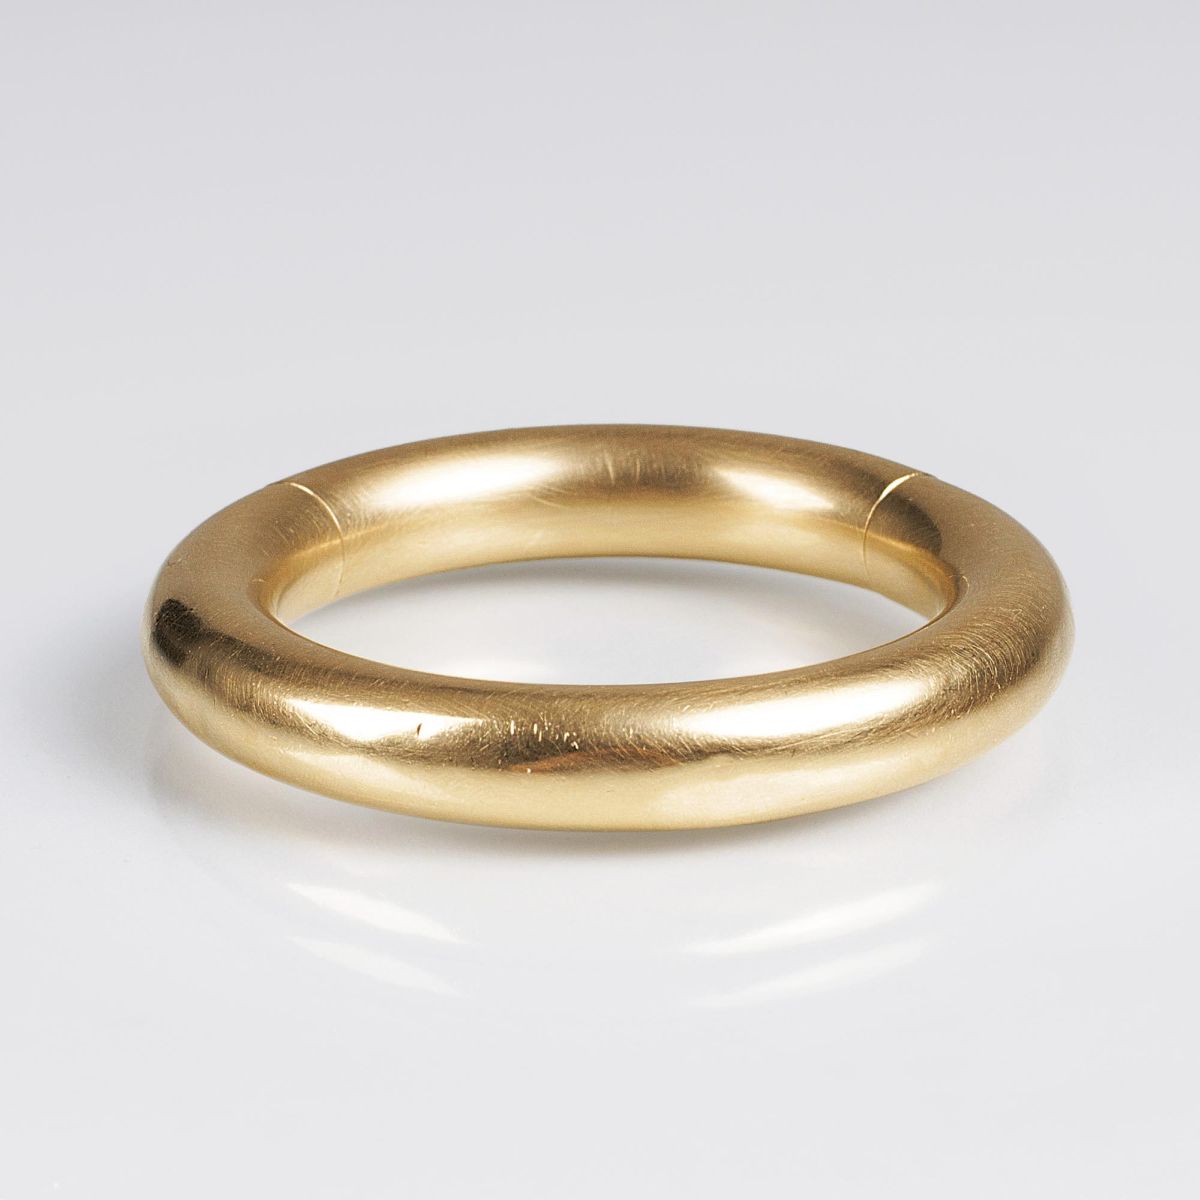 A Modern Gold Bangle Bracelet